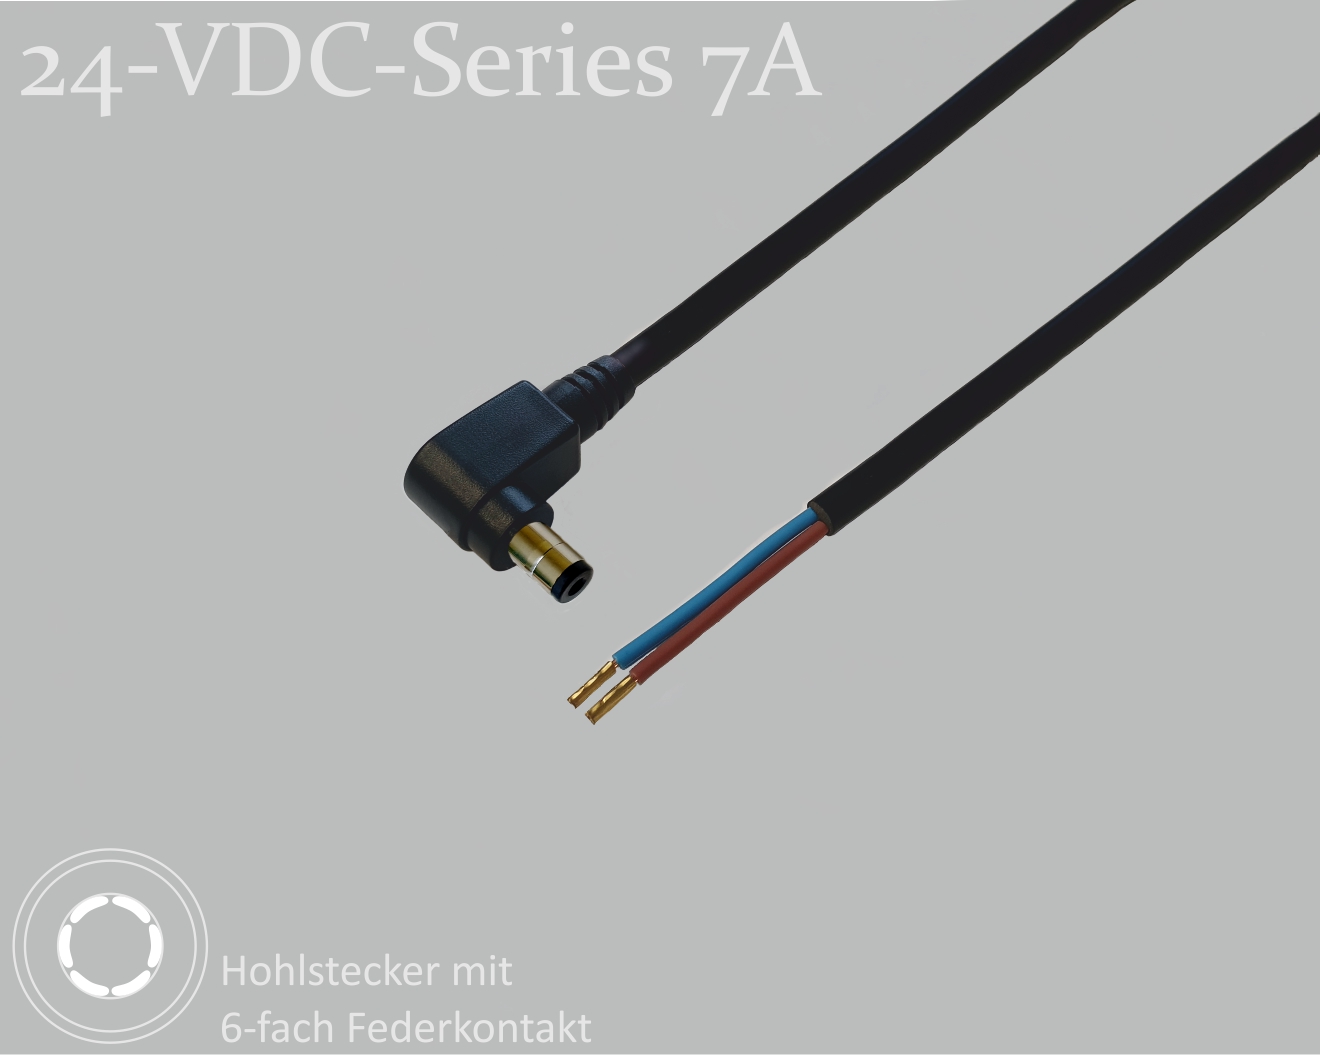 24-VDC-Series 7A, DC-Anschlusskabel, DC-Winkelstecker mit 4-Federkontakt 2,5x5,5x9,5mm, Rundkabel 2x0,50mm², schwarz, Aderendhülsen, 0,75m